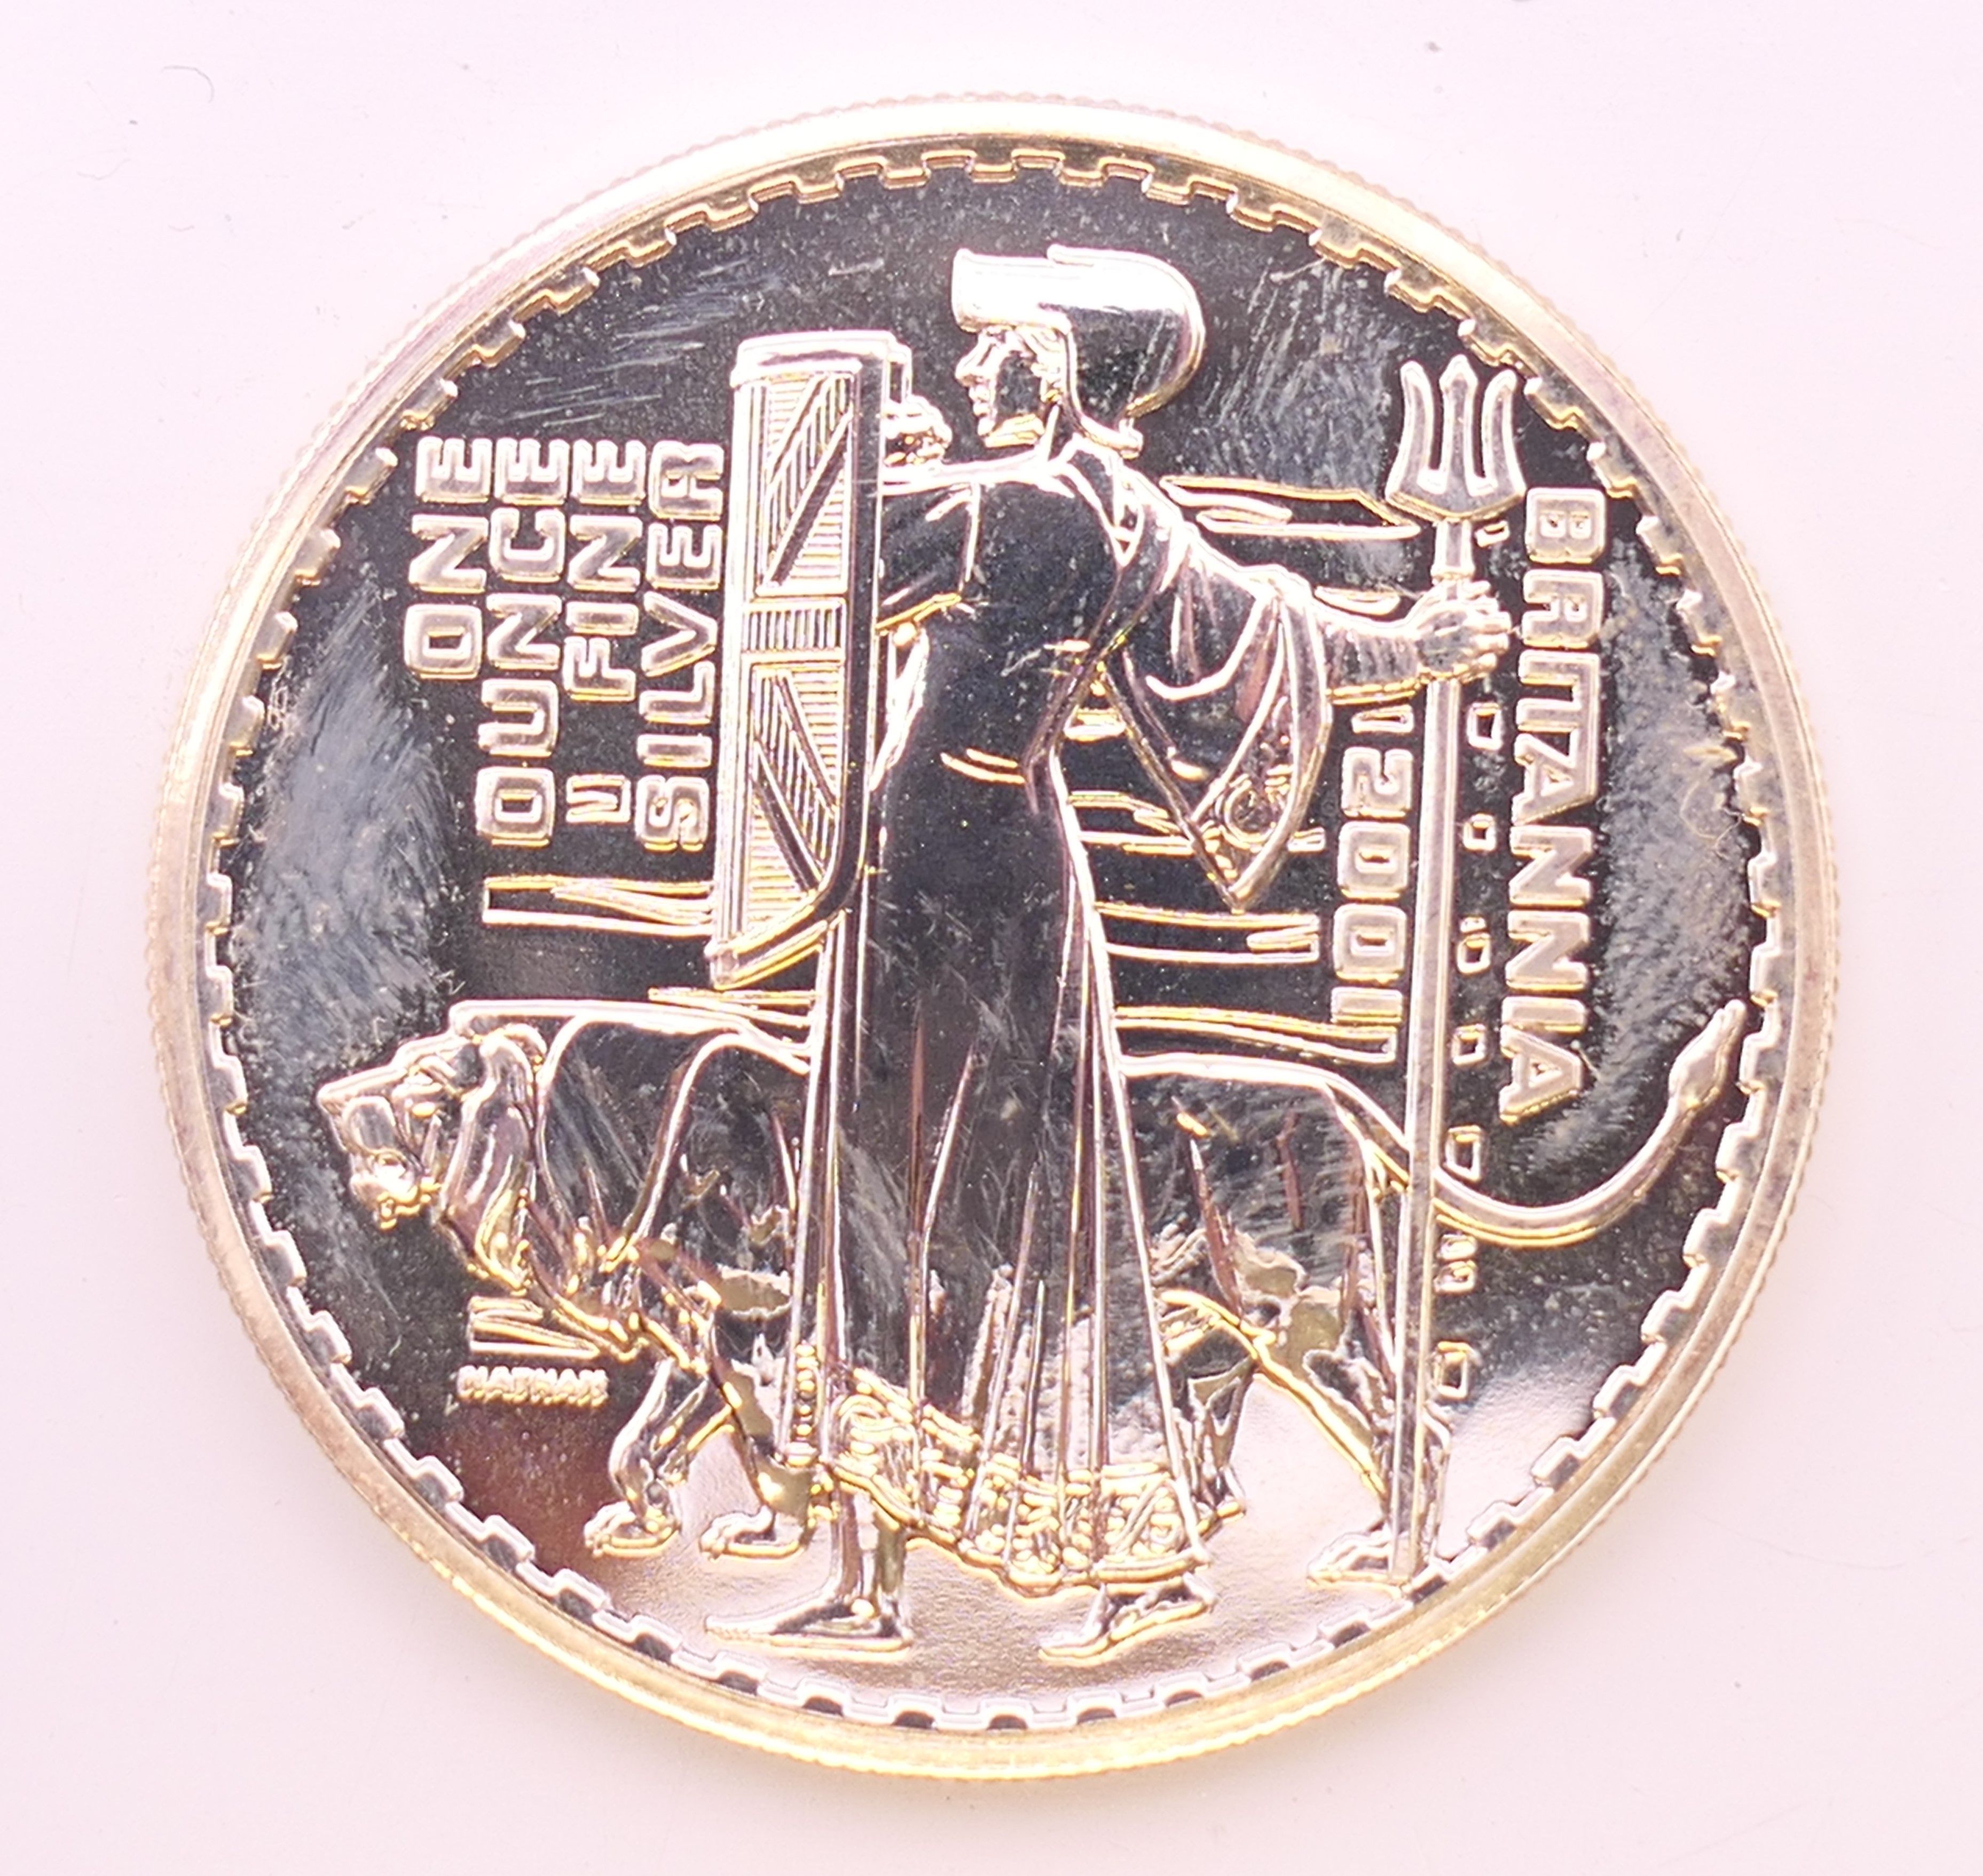 A 2001 1oz fine silver Britannia coin. - Image 2 of 2